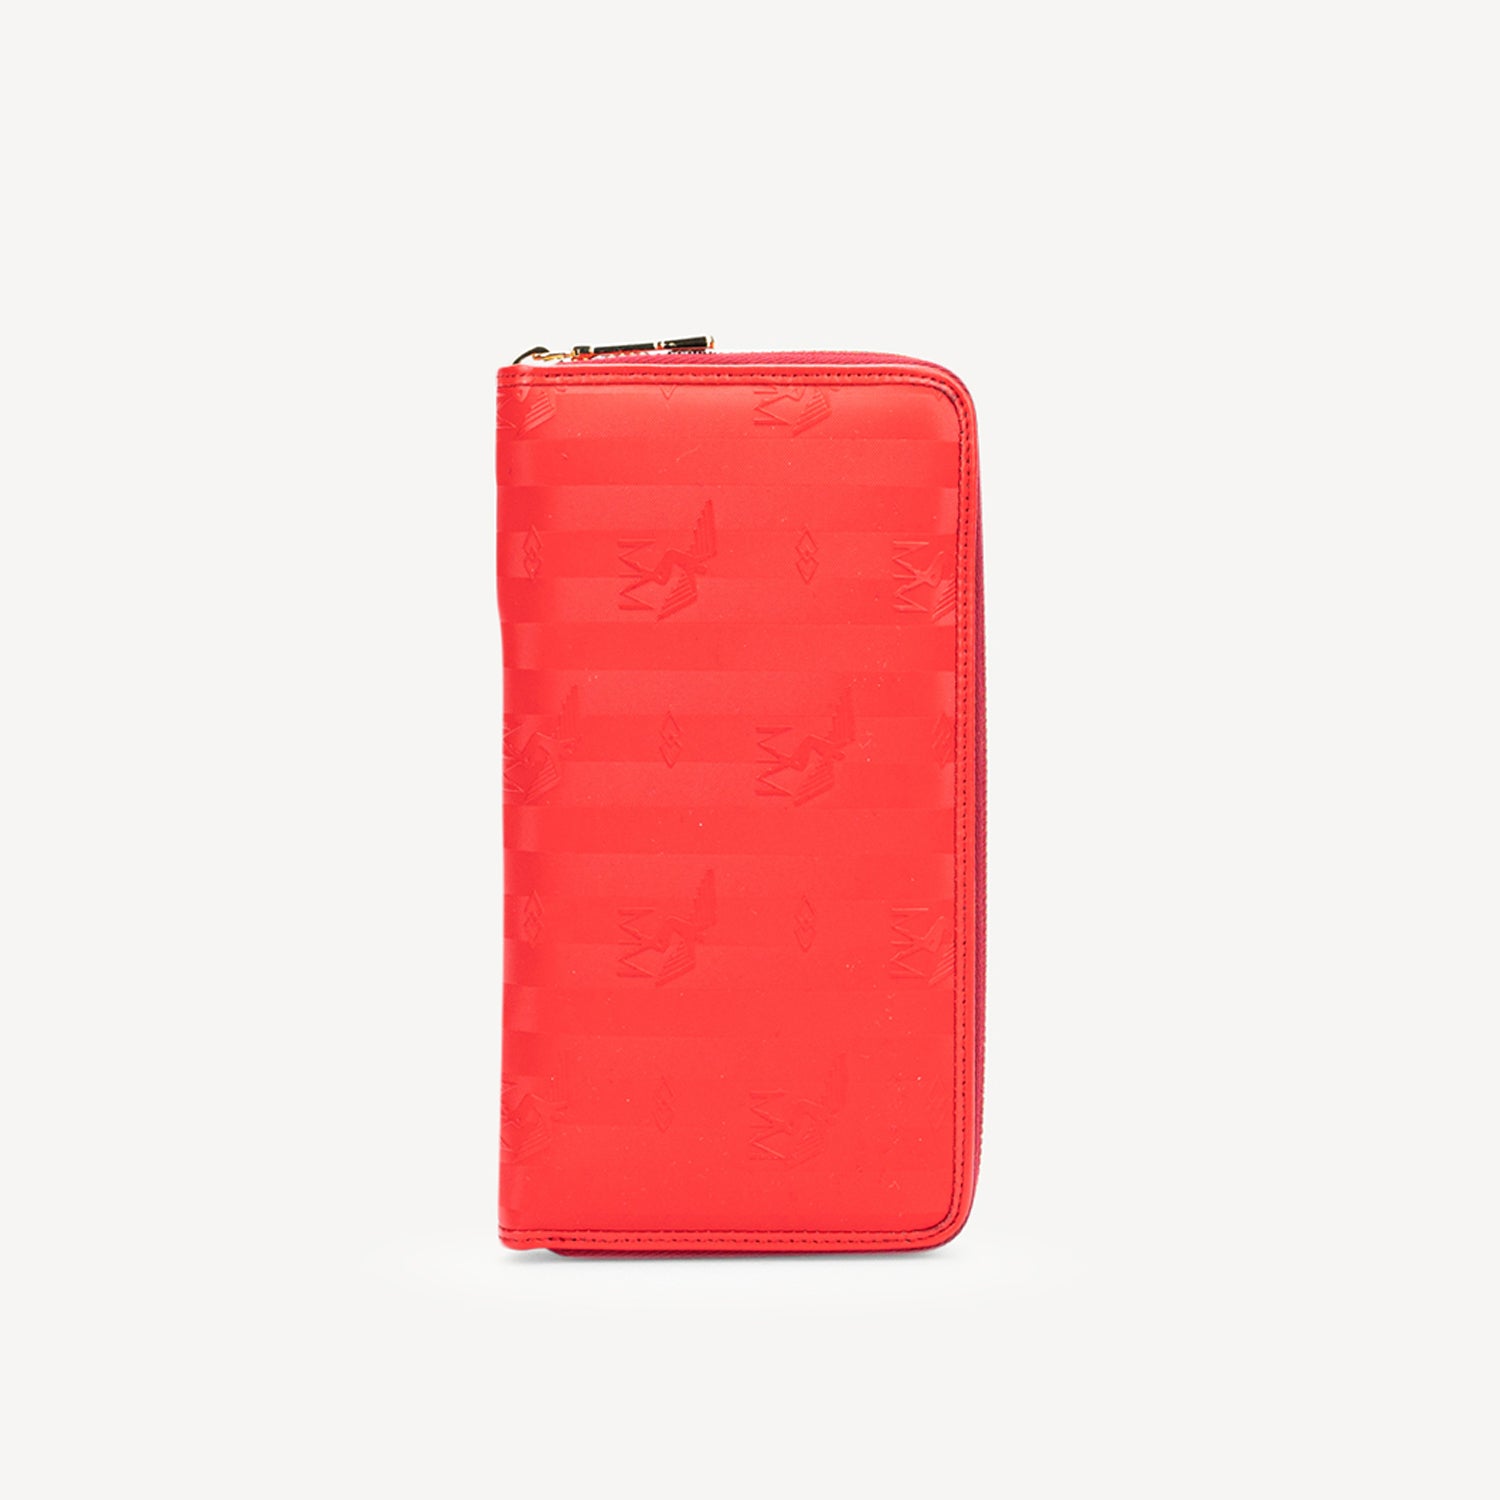 CLARIDEN | Wallet dark red/gold